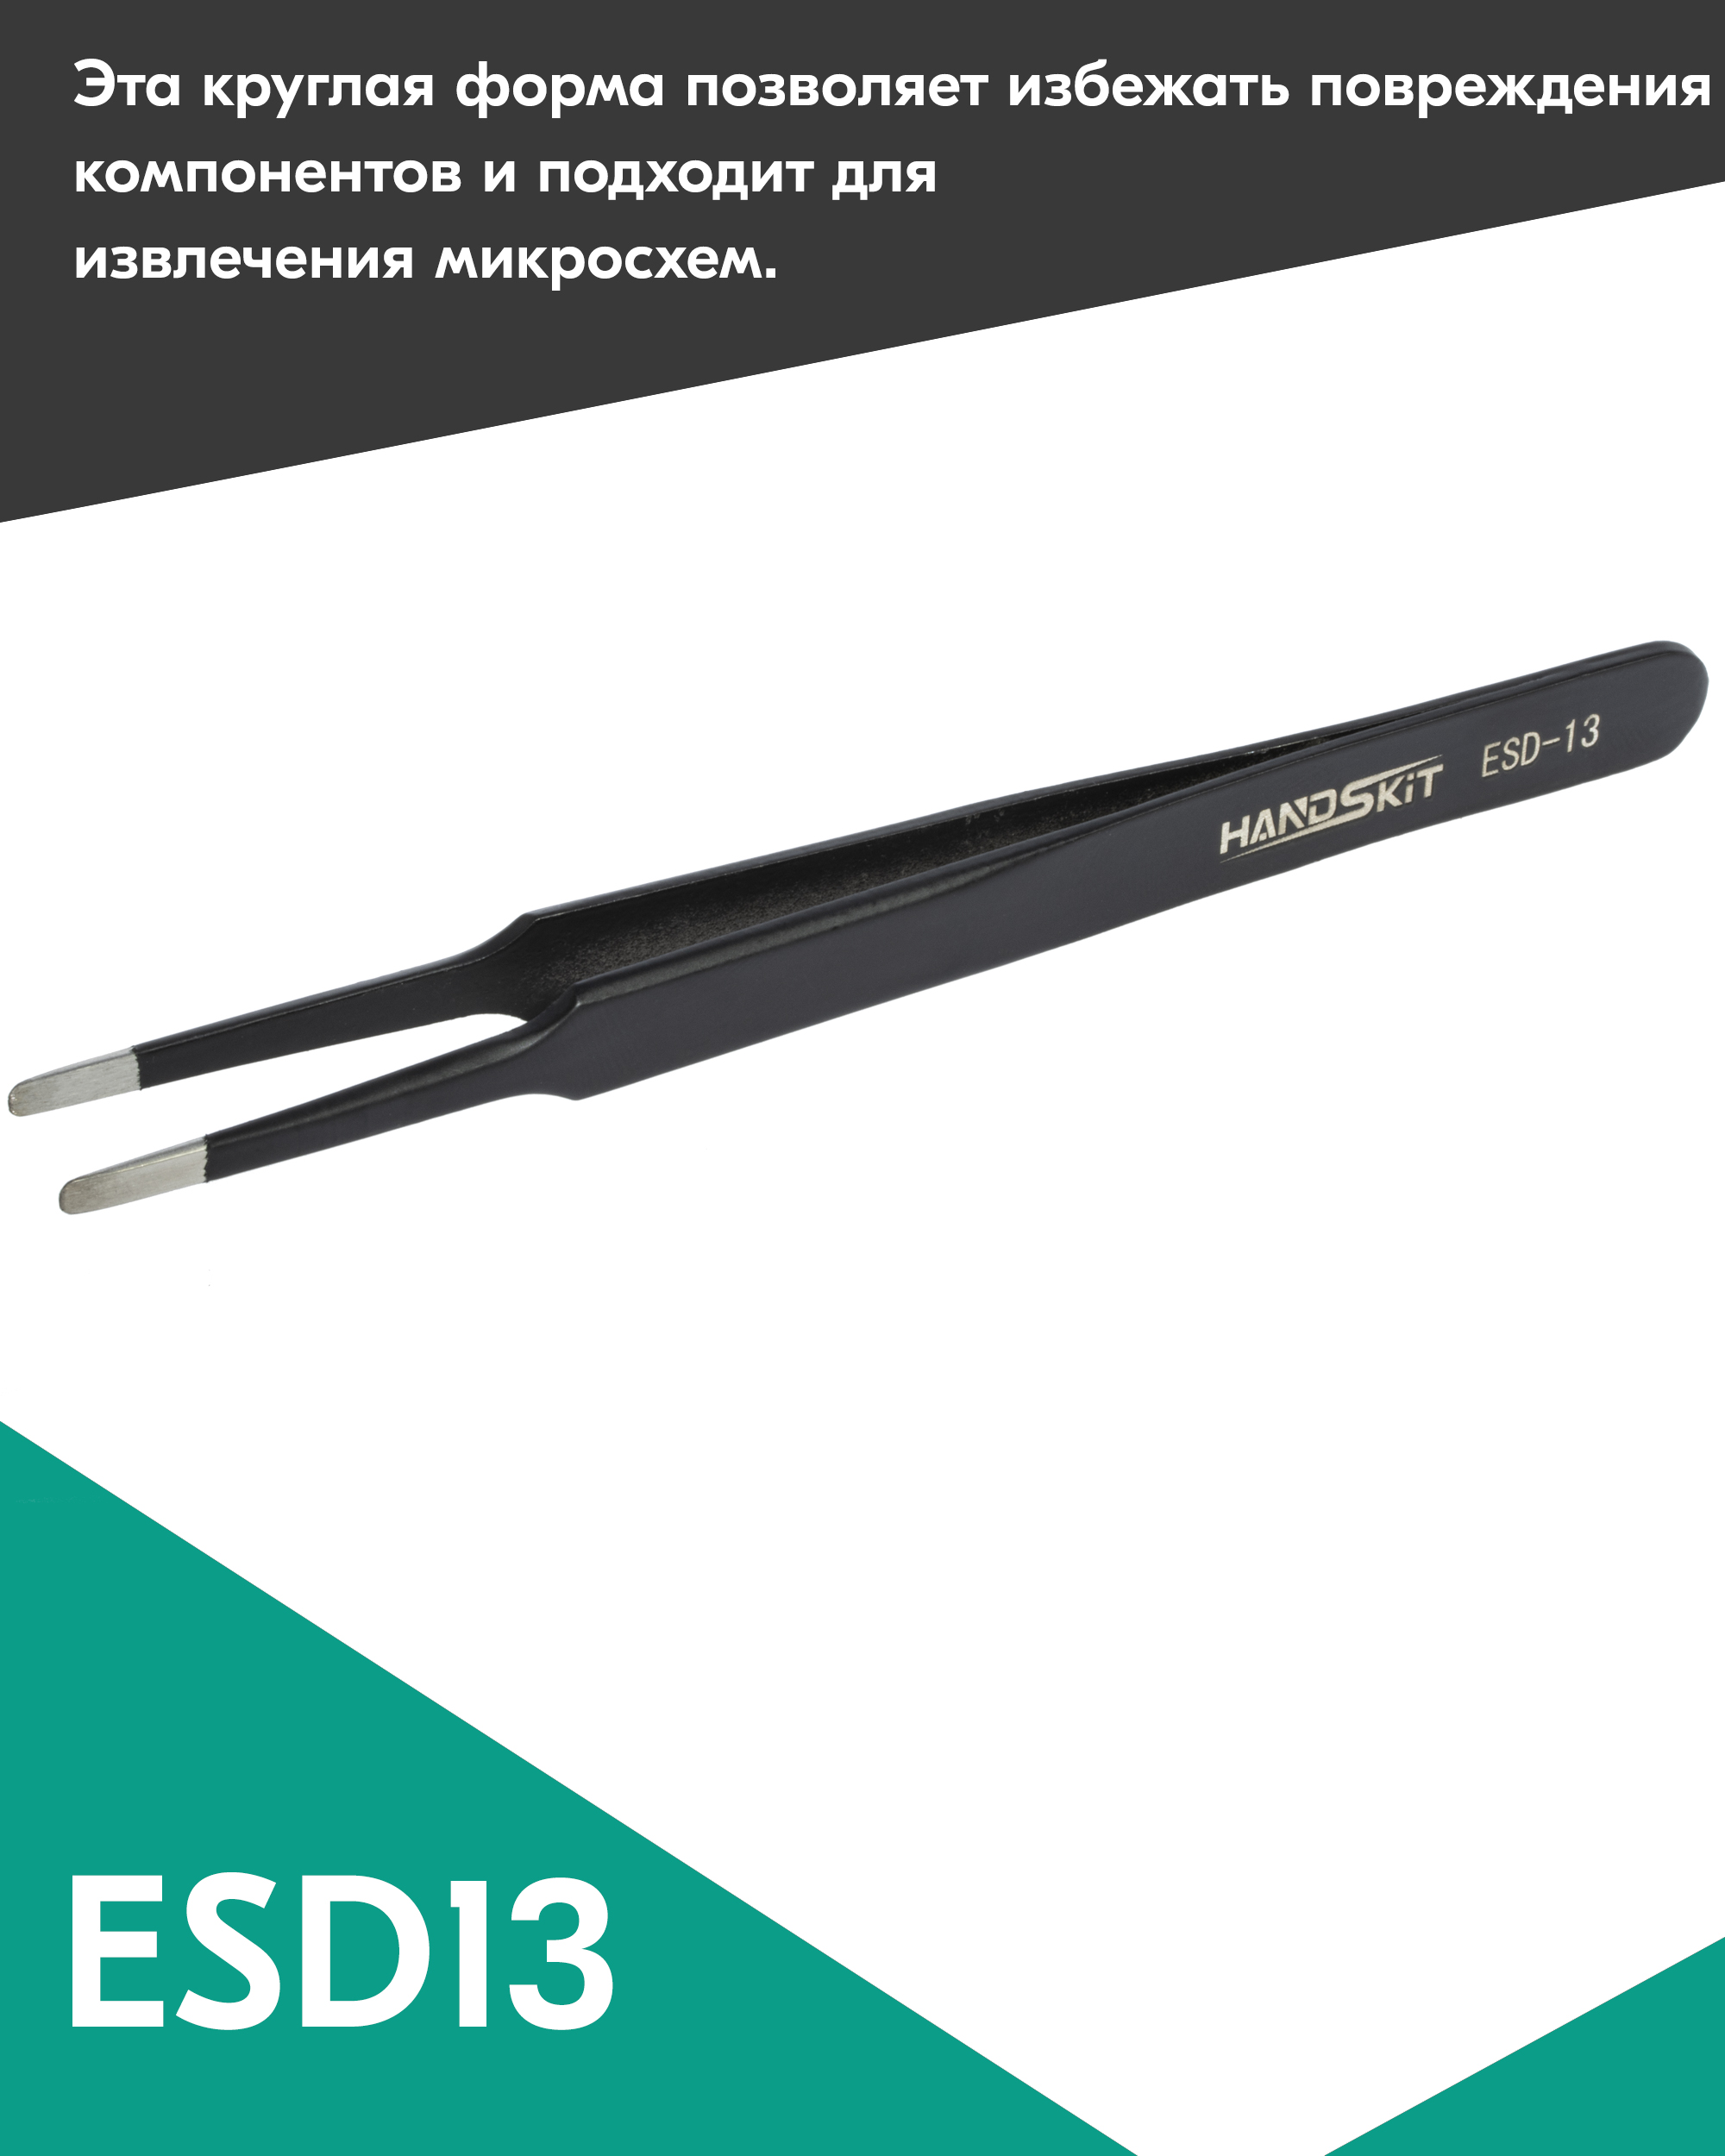 Пинцет диэлектрический HANDSKIT ESD13 (120 мм) пинцет для наращивания ресниц загнутый 12 см